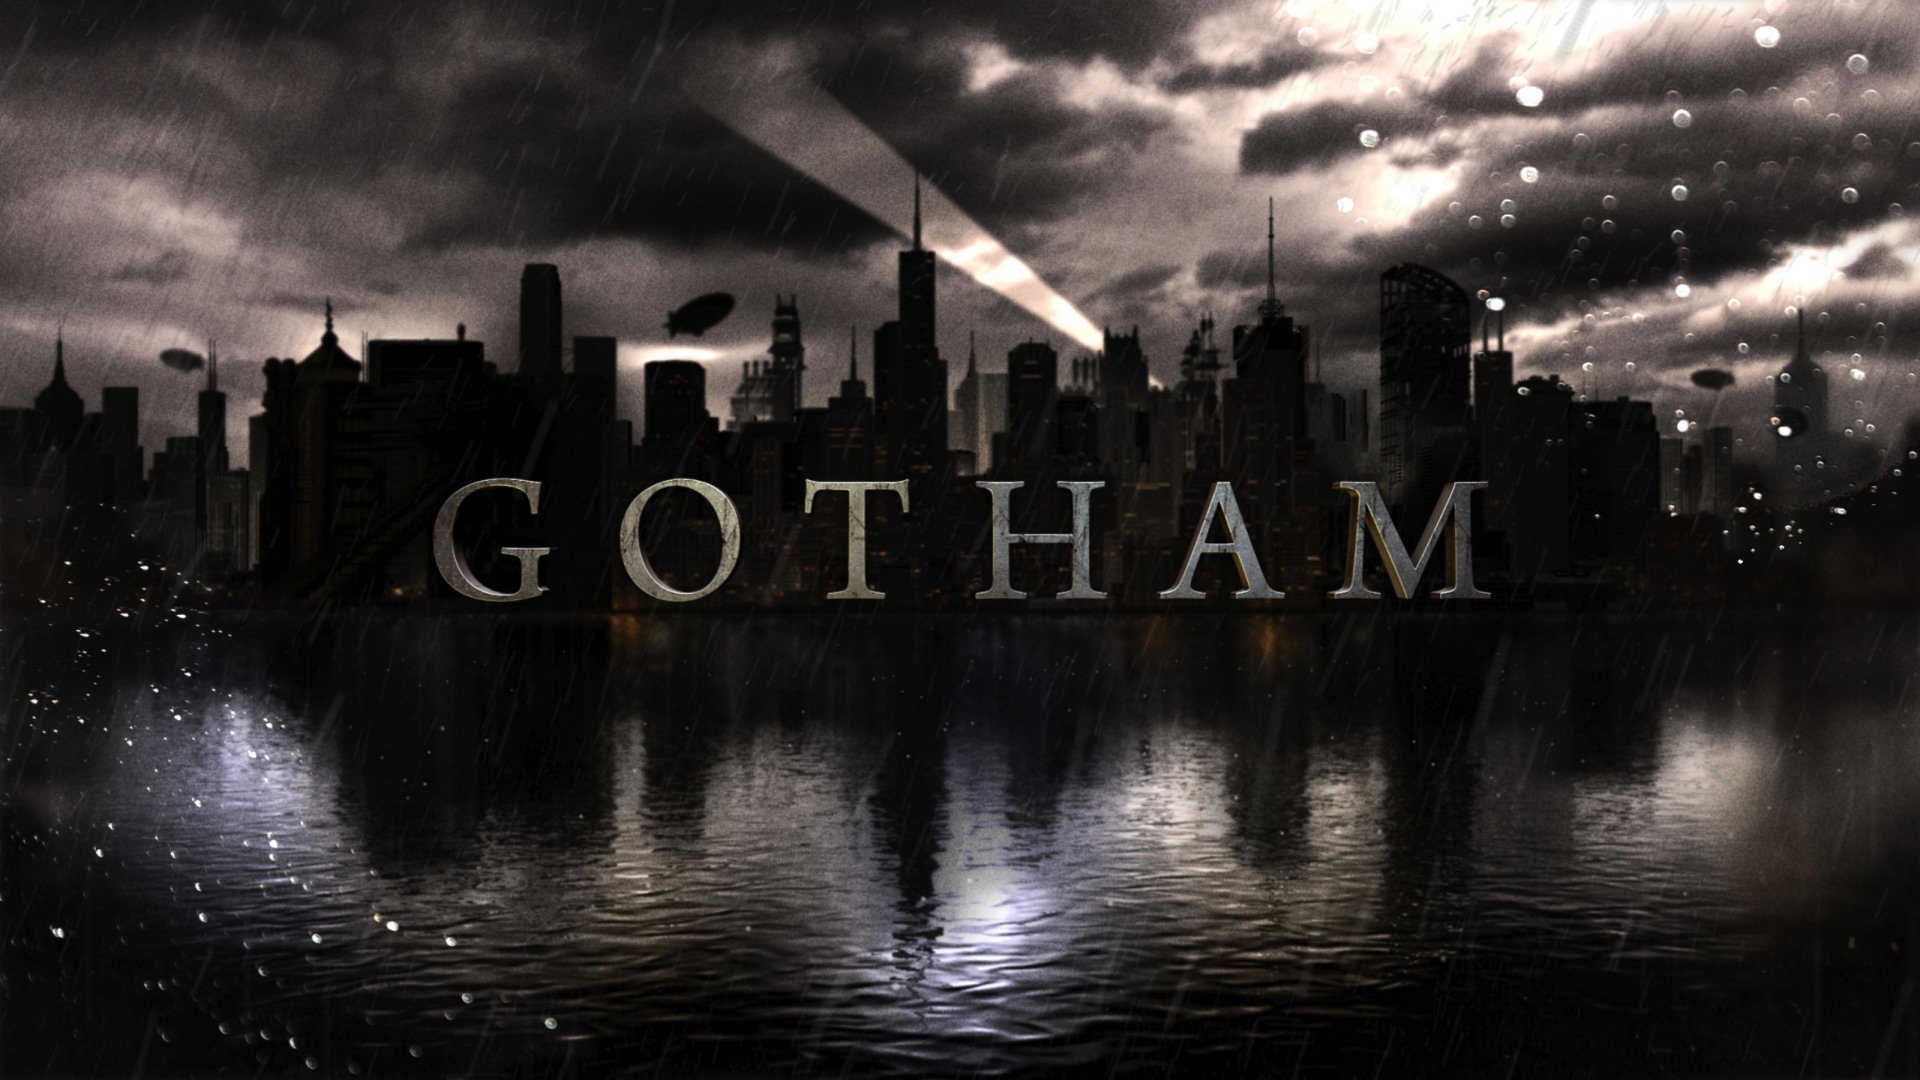 Gotham City by Night   1920x1080   Full HD 169